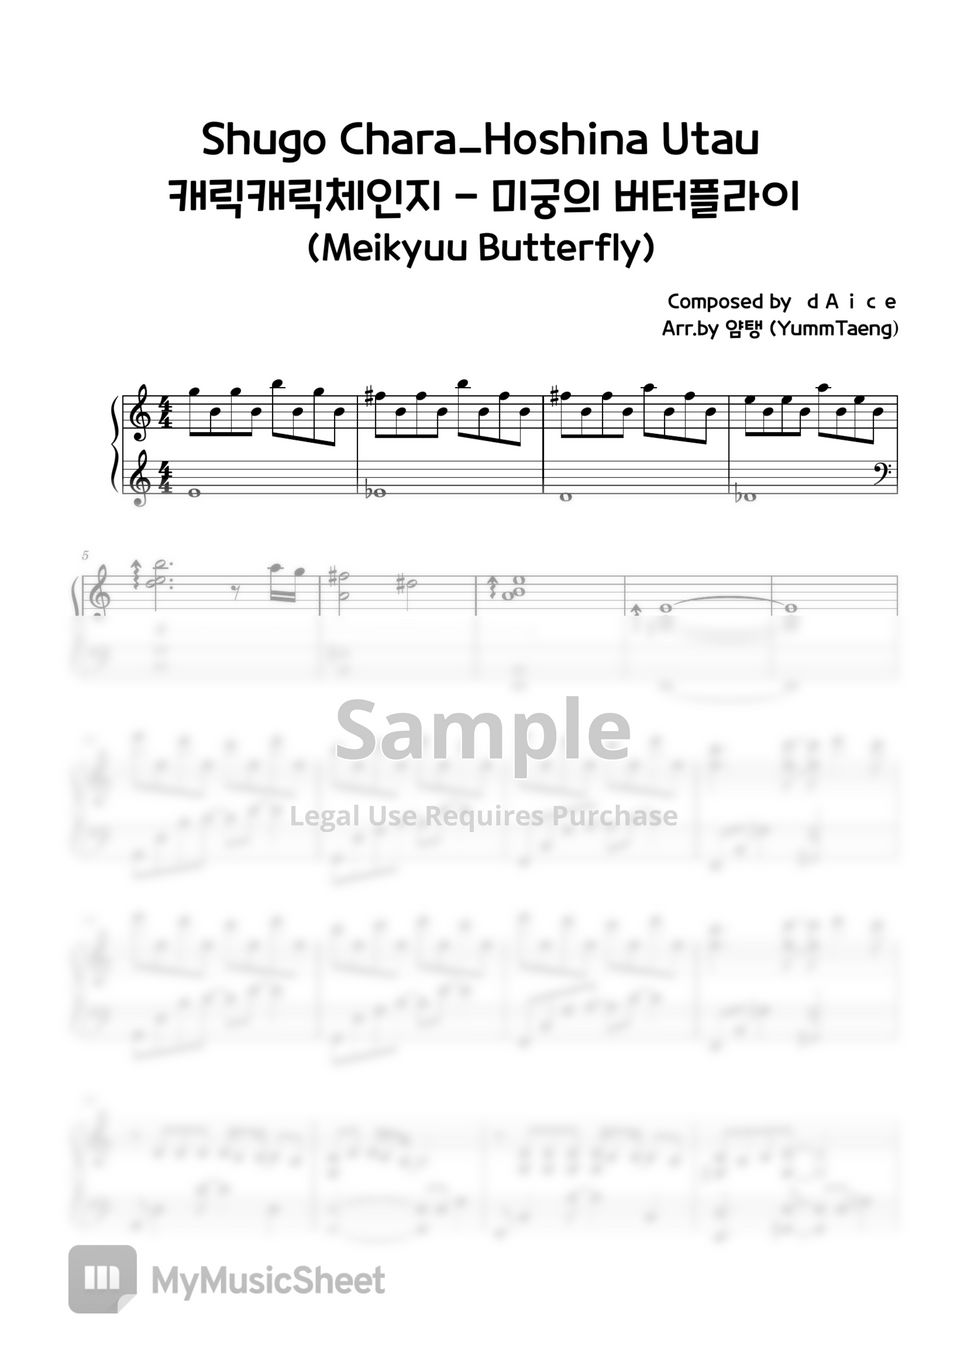 Shugo Chara - Meikyuu Butterfly by YummTaeng